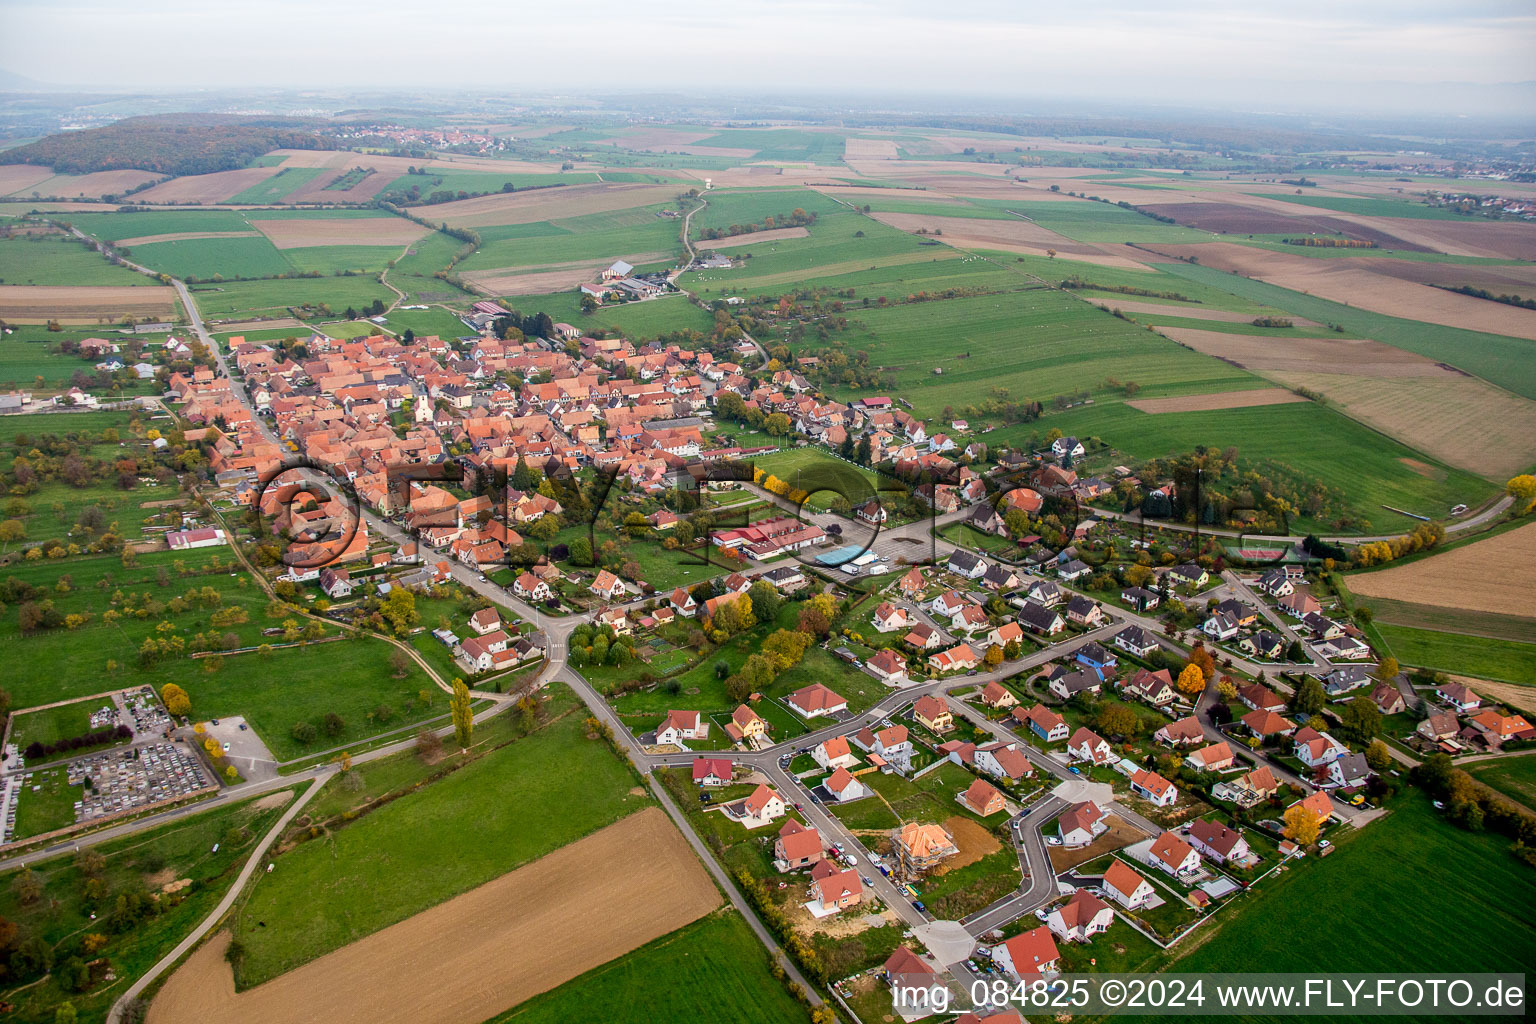 Vue aérienne de Champs agricoles et surfaces utilisables à Uhrwiller dans le département Bas Rhin, France